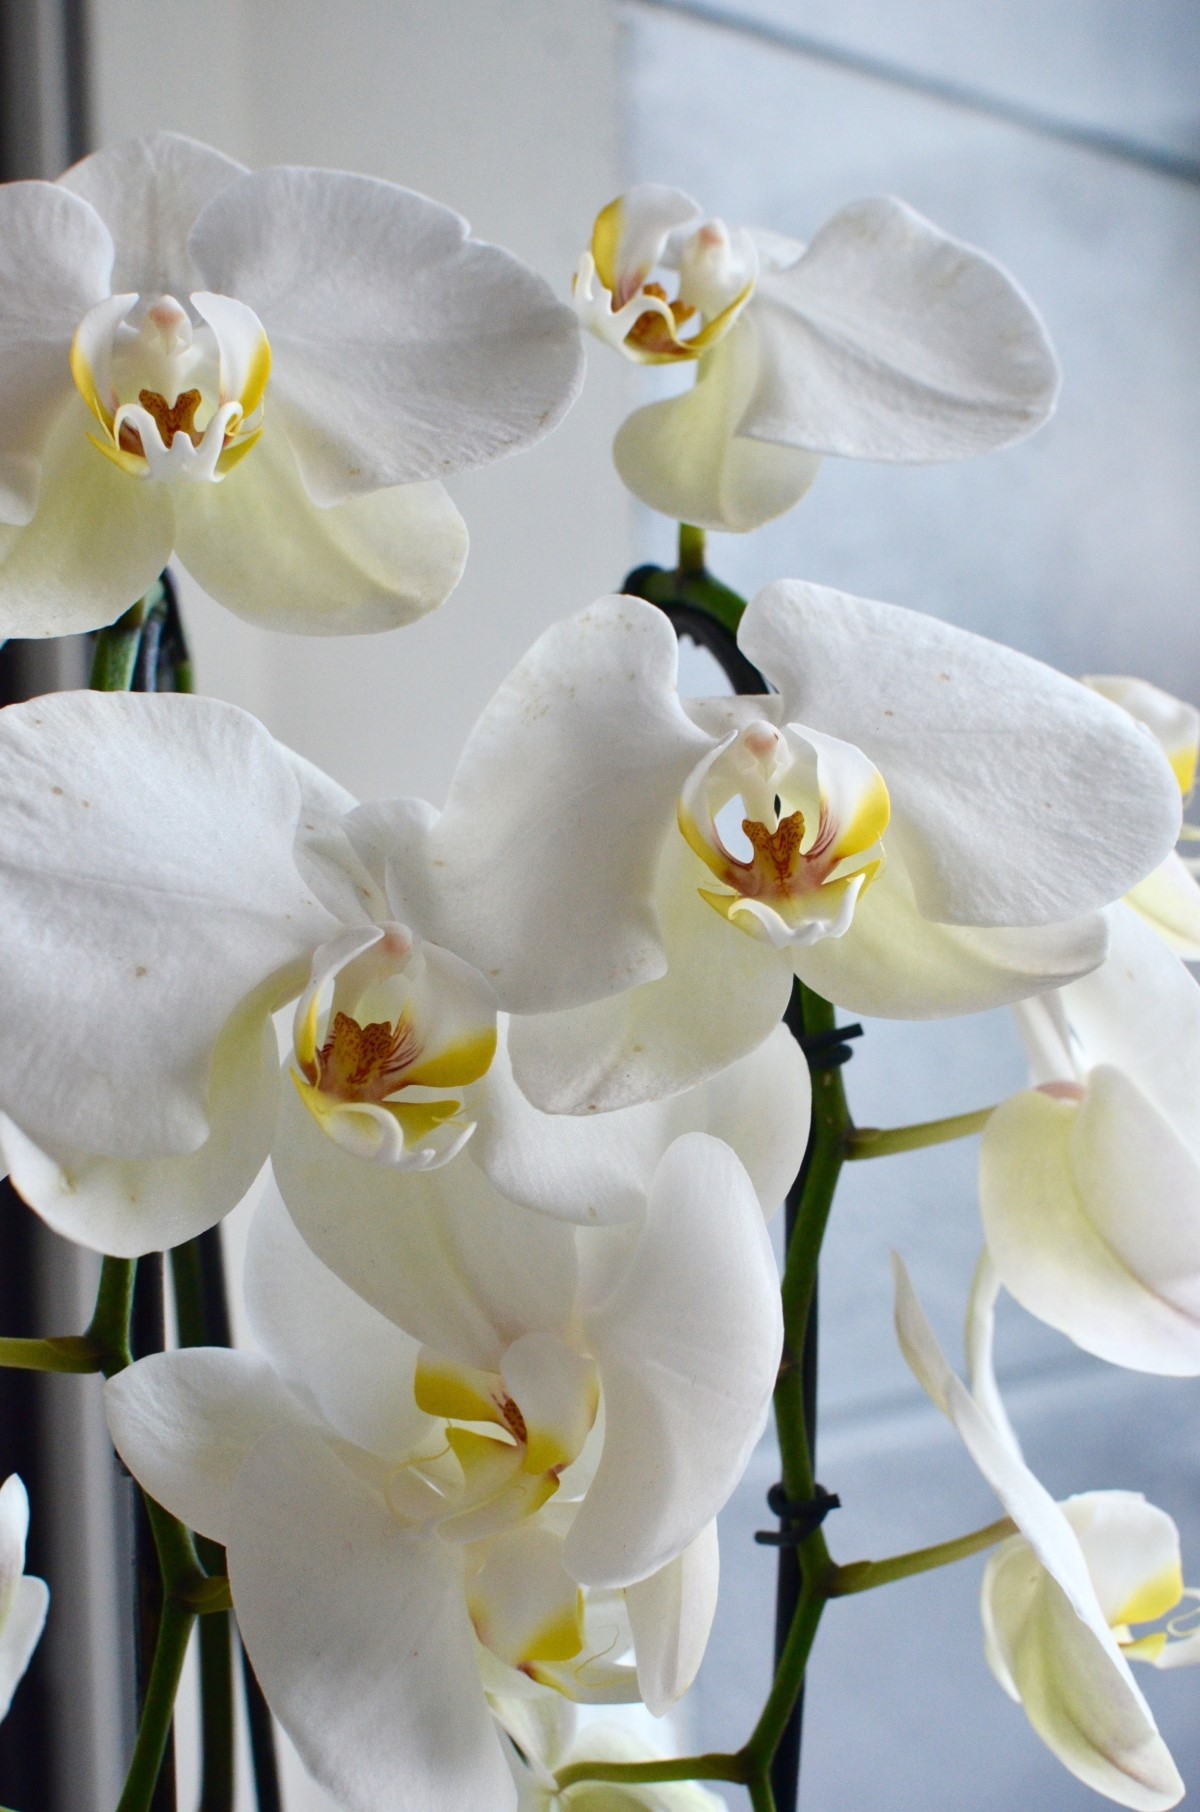 Se as folhas da orquídea estão em tom de verde muito escuro, ou com as folhas alongadas e finas pode ser sinal de falta de luz (Foto: Pexels / Skylar Kang / CreativeCommons)